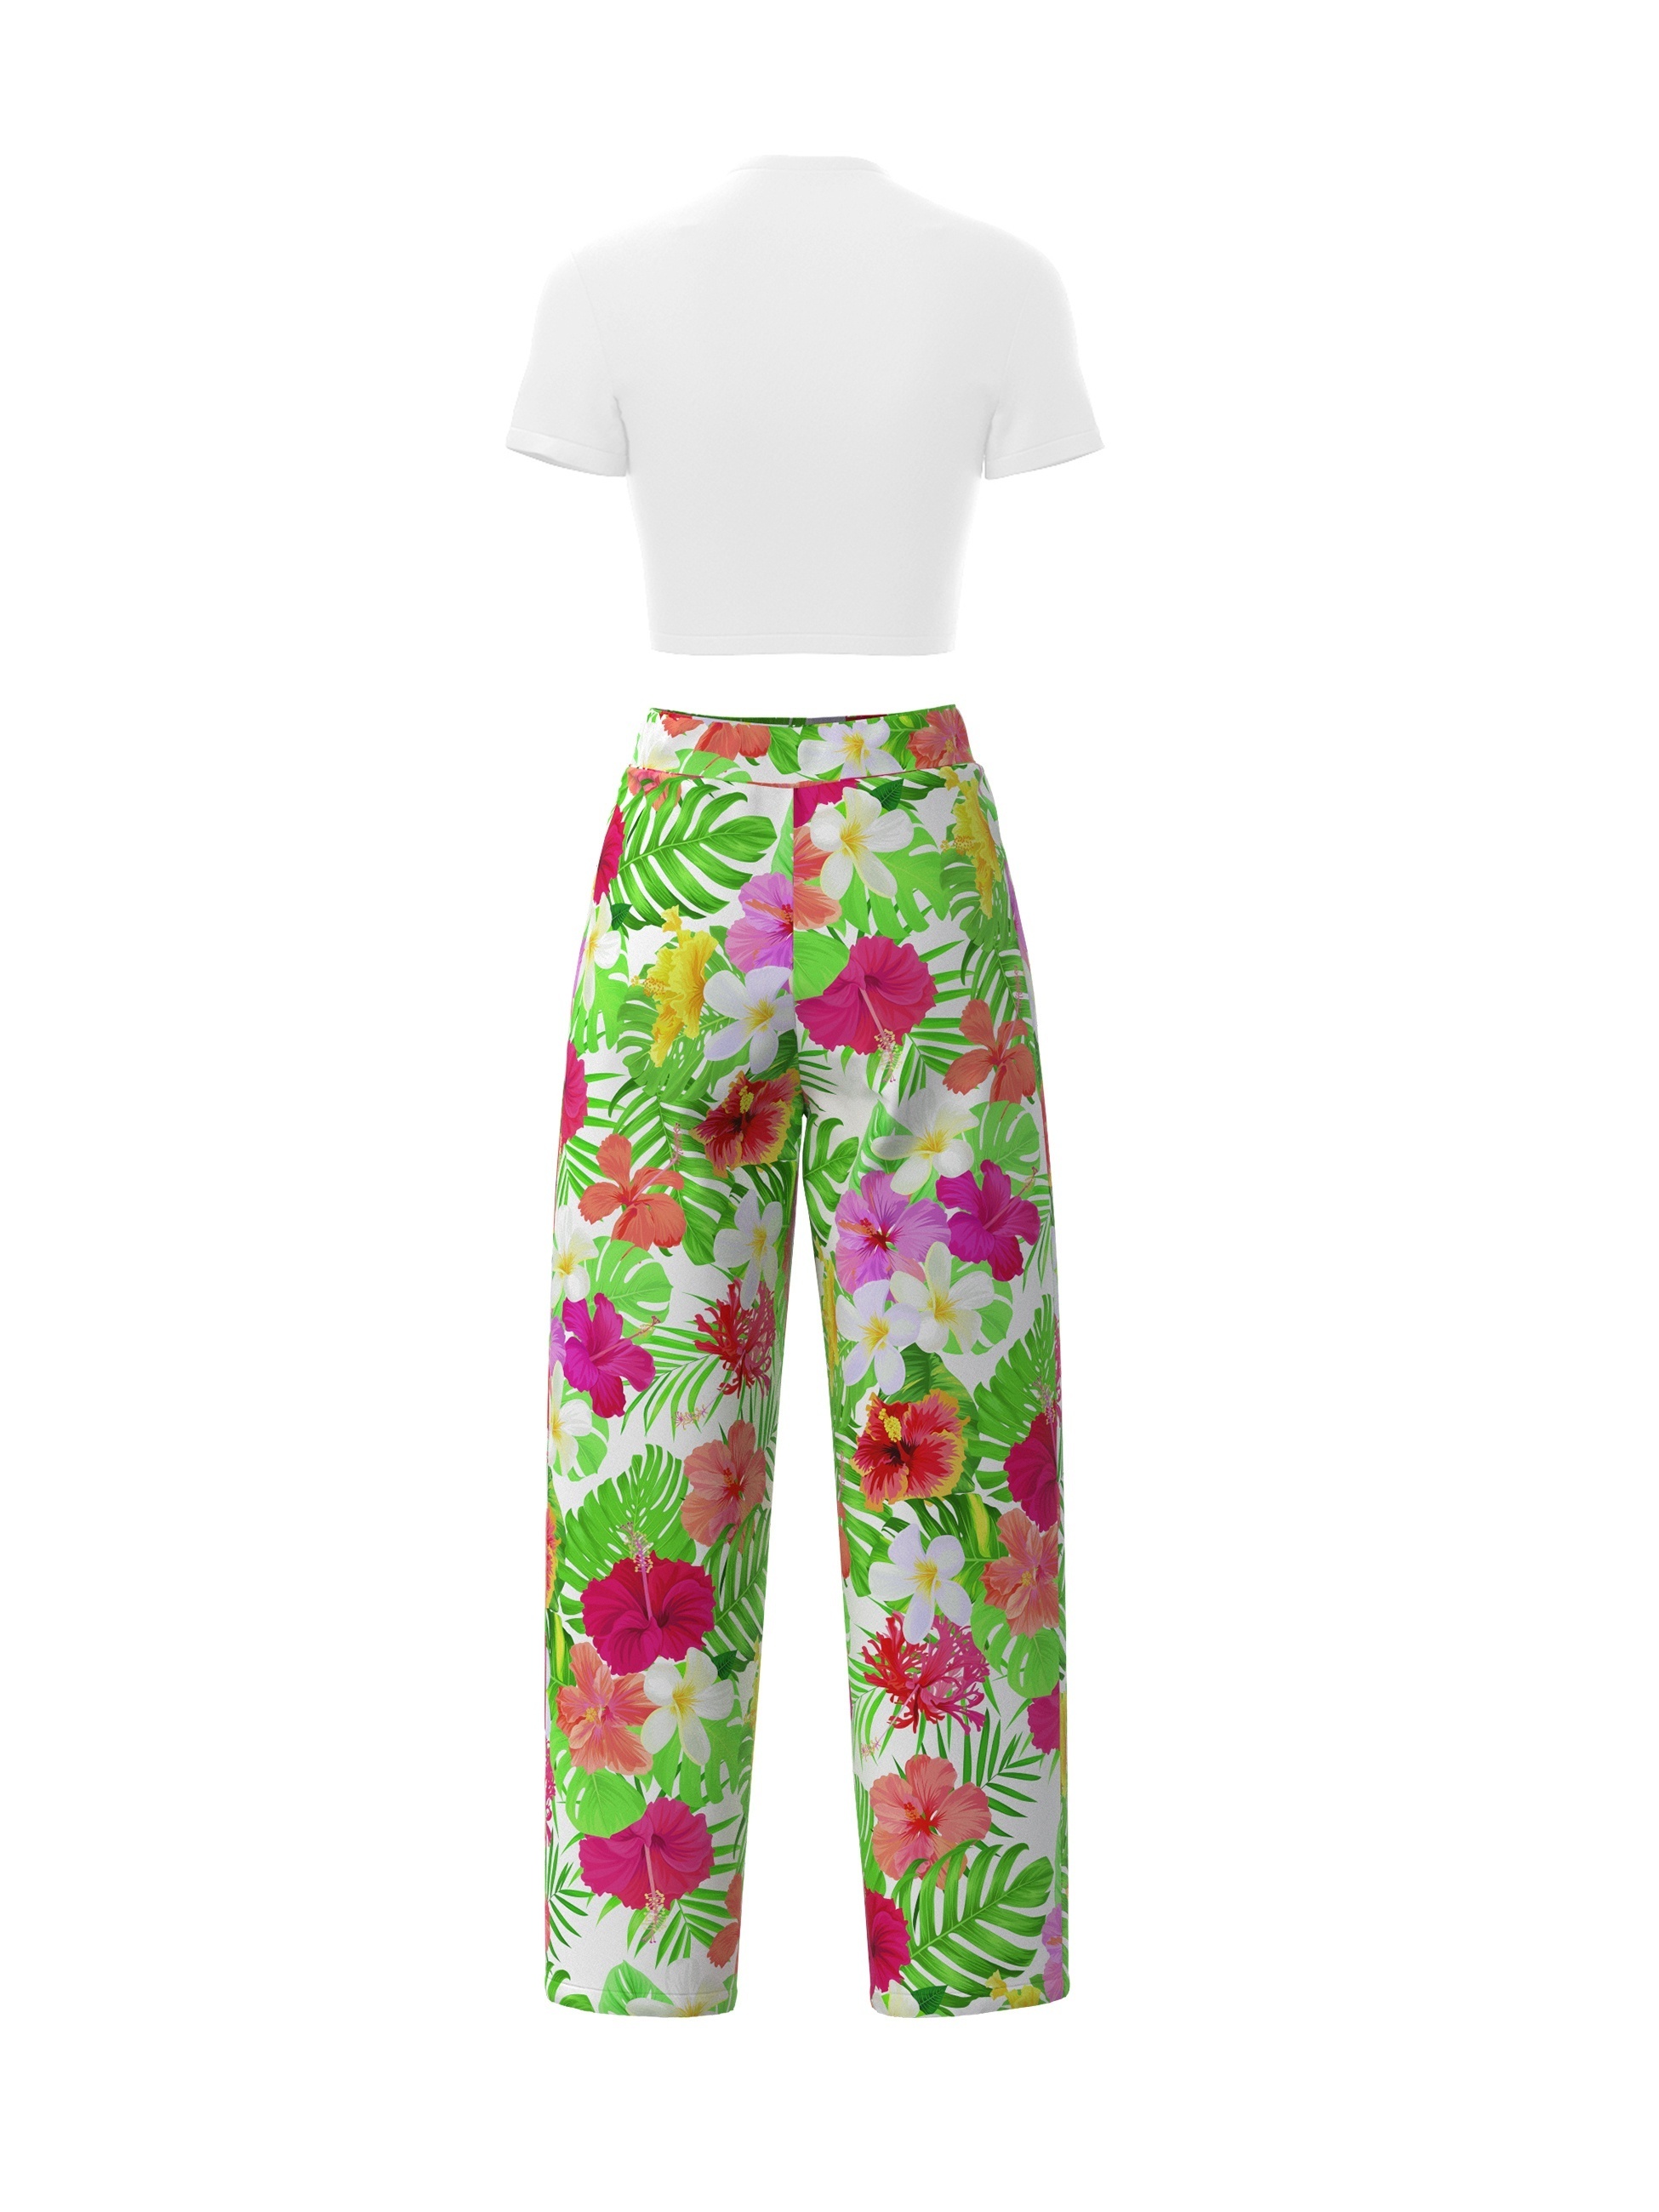 Conjunto Casual De Dos Piezas A Juego, Camiseta Corta De Manga Corta + Pantalones De Pierna Ancha Con Estampado Floral, Ropa De Mujer